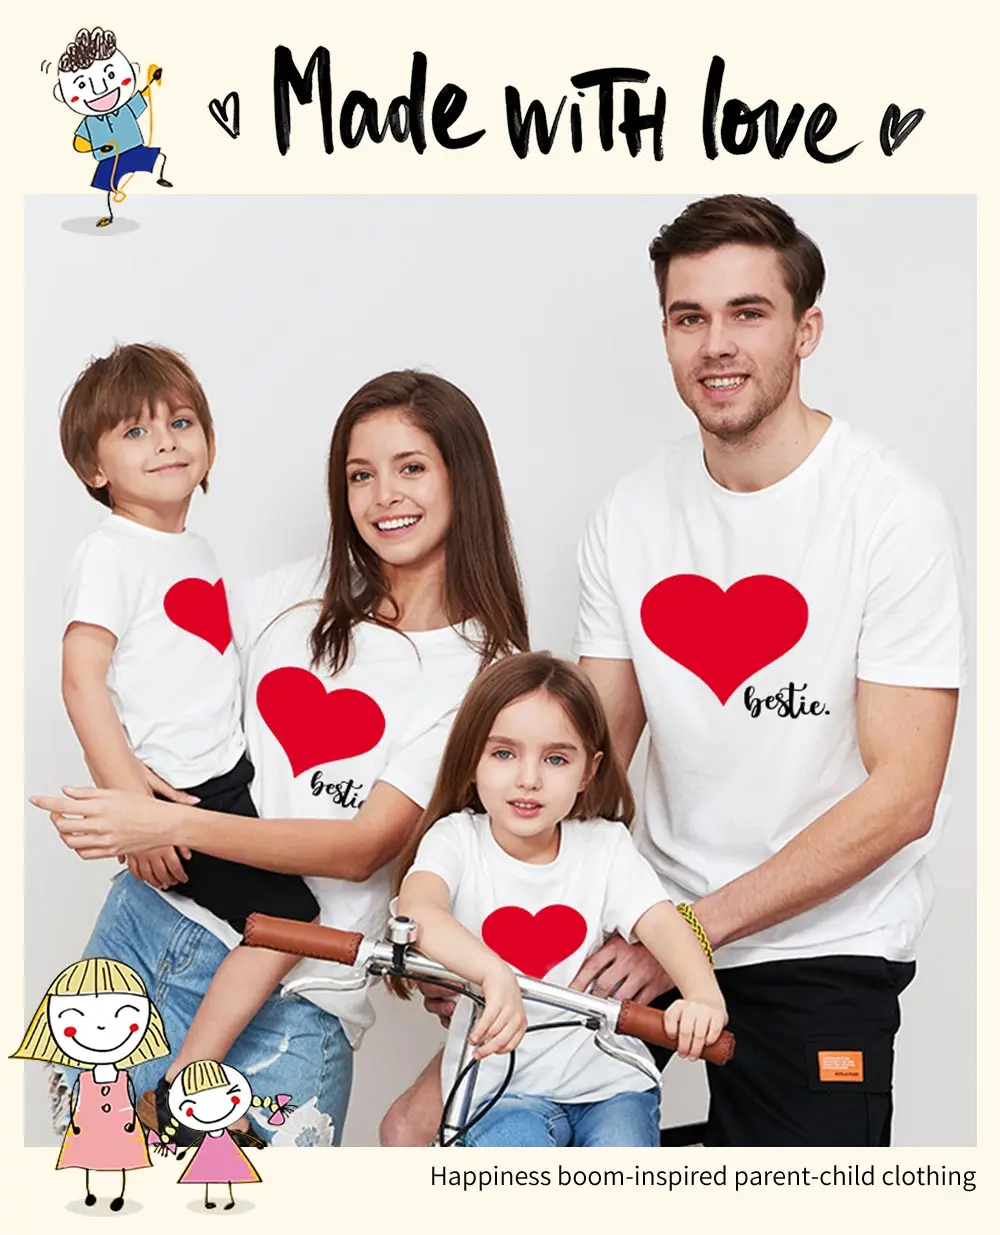 Футболка с надписью «Love heart» Семейные комплекты для мамы, папы и меня, сына и дочки наряд для мамы, папы, мальчика и девочки милый Принт nmd